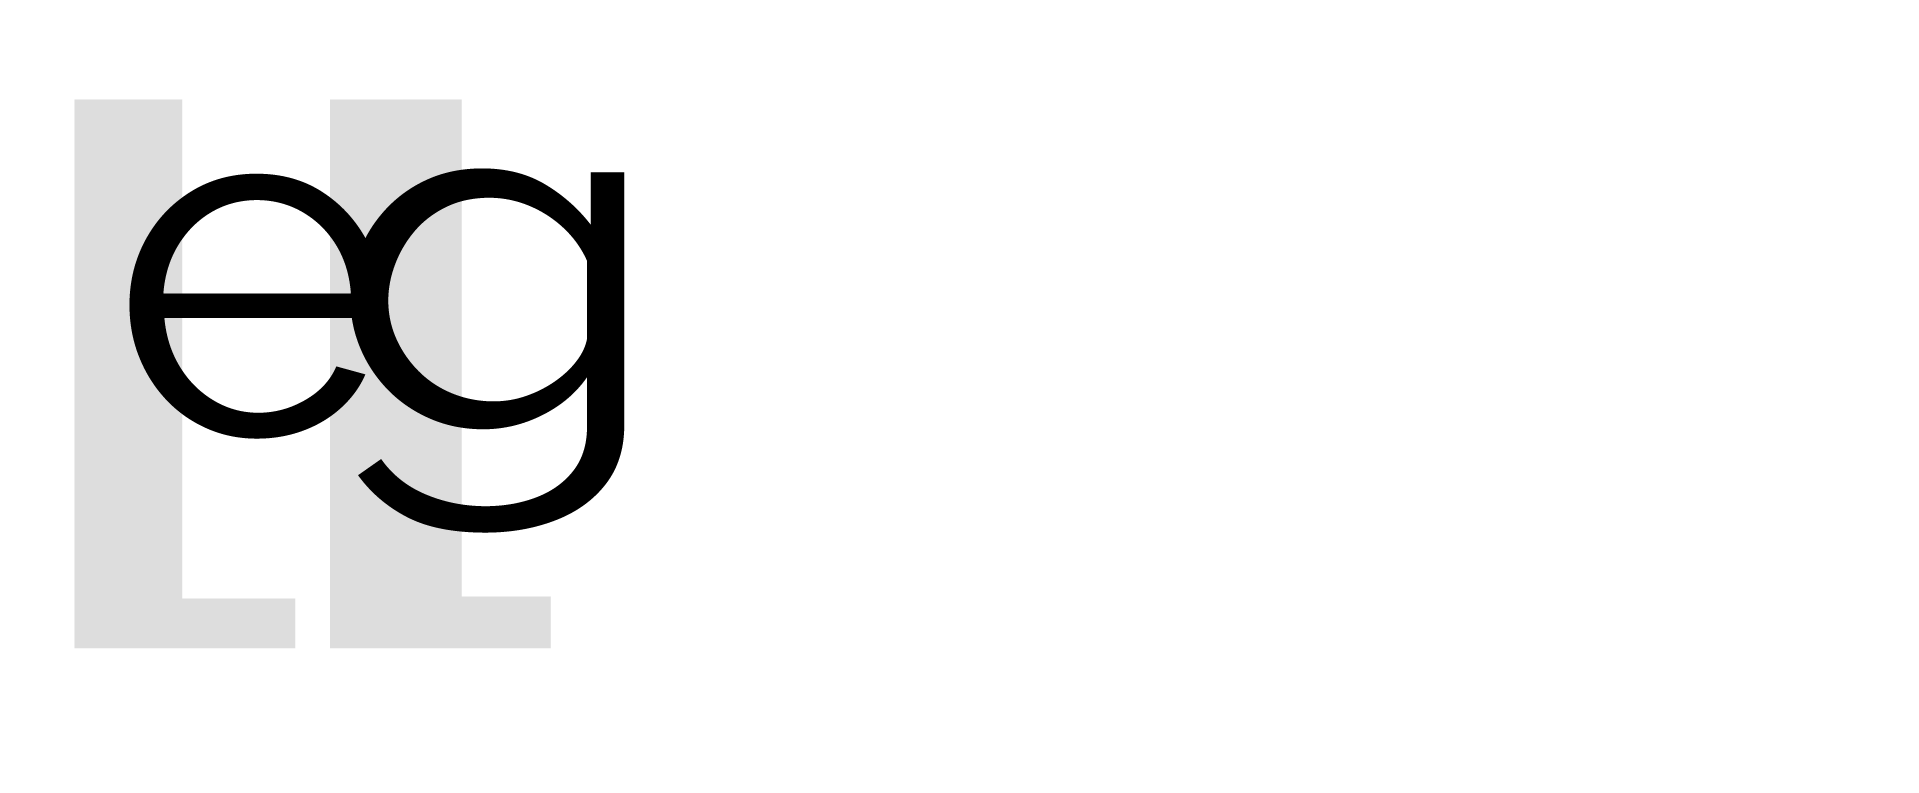 Logo EG empresarios Granada en Blanco